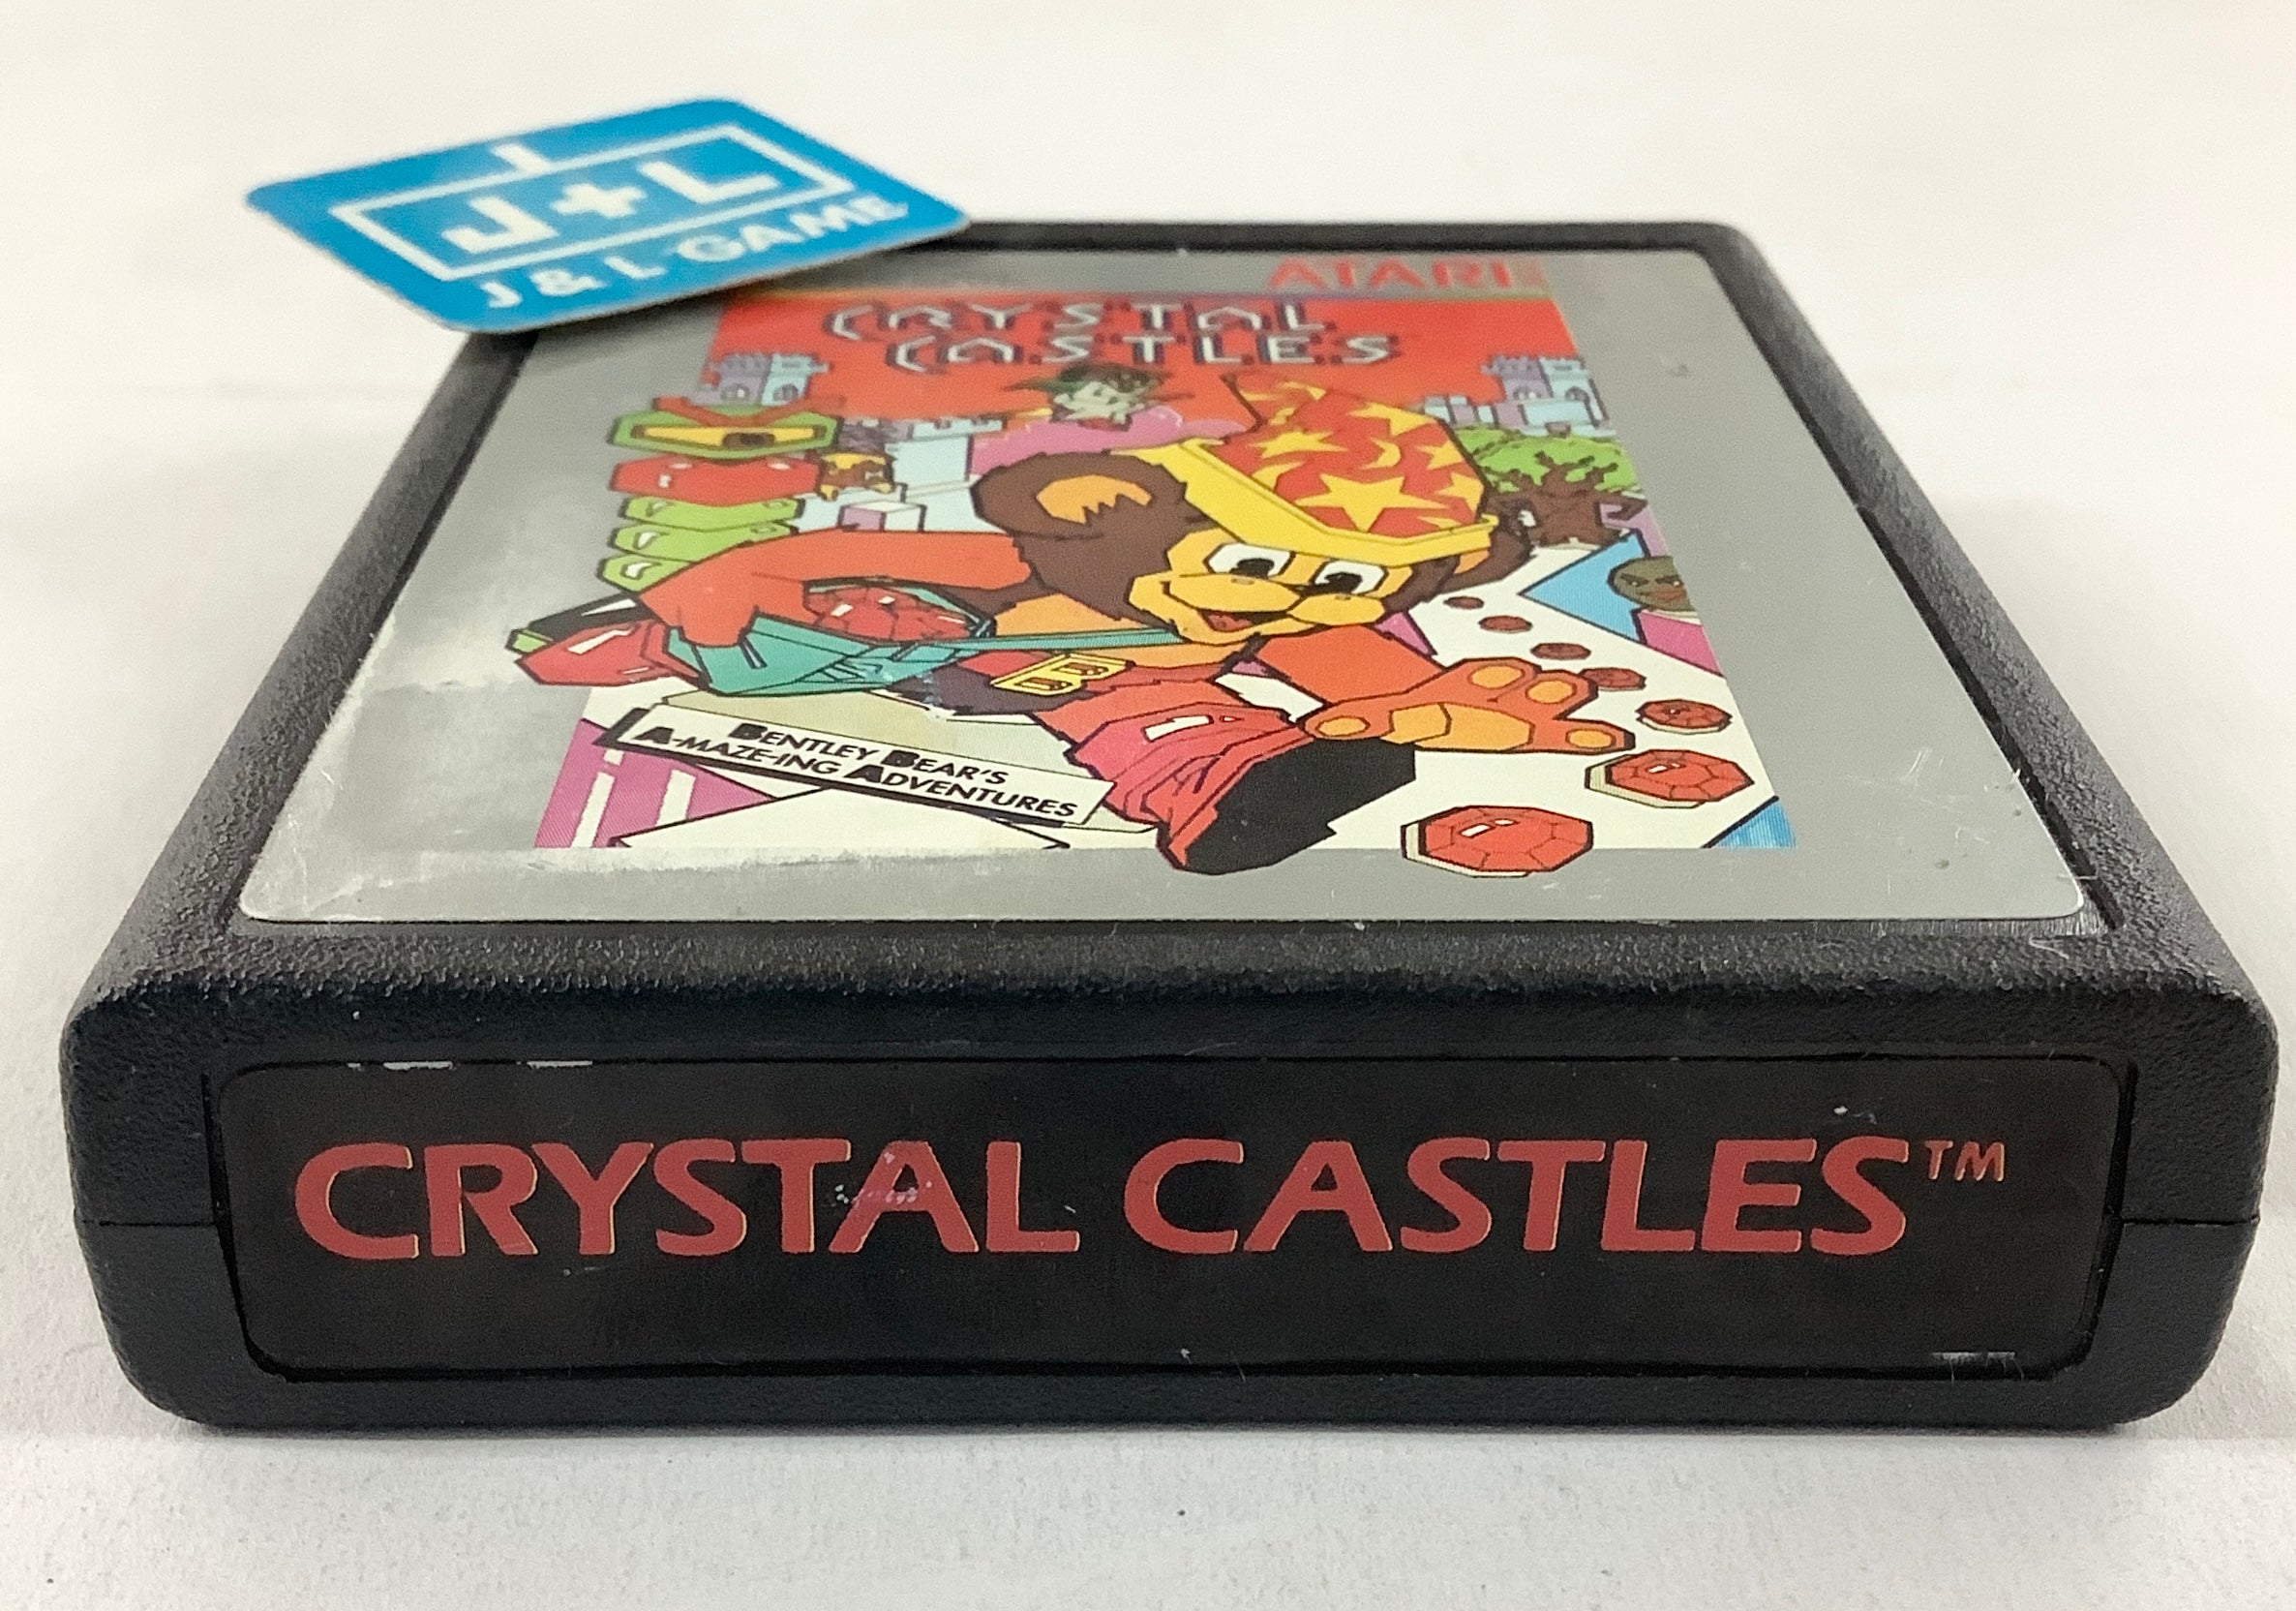 Crystal Castles - Atari 2600 [Pre-Owned] Video Games Atari Inc.   